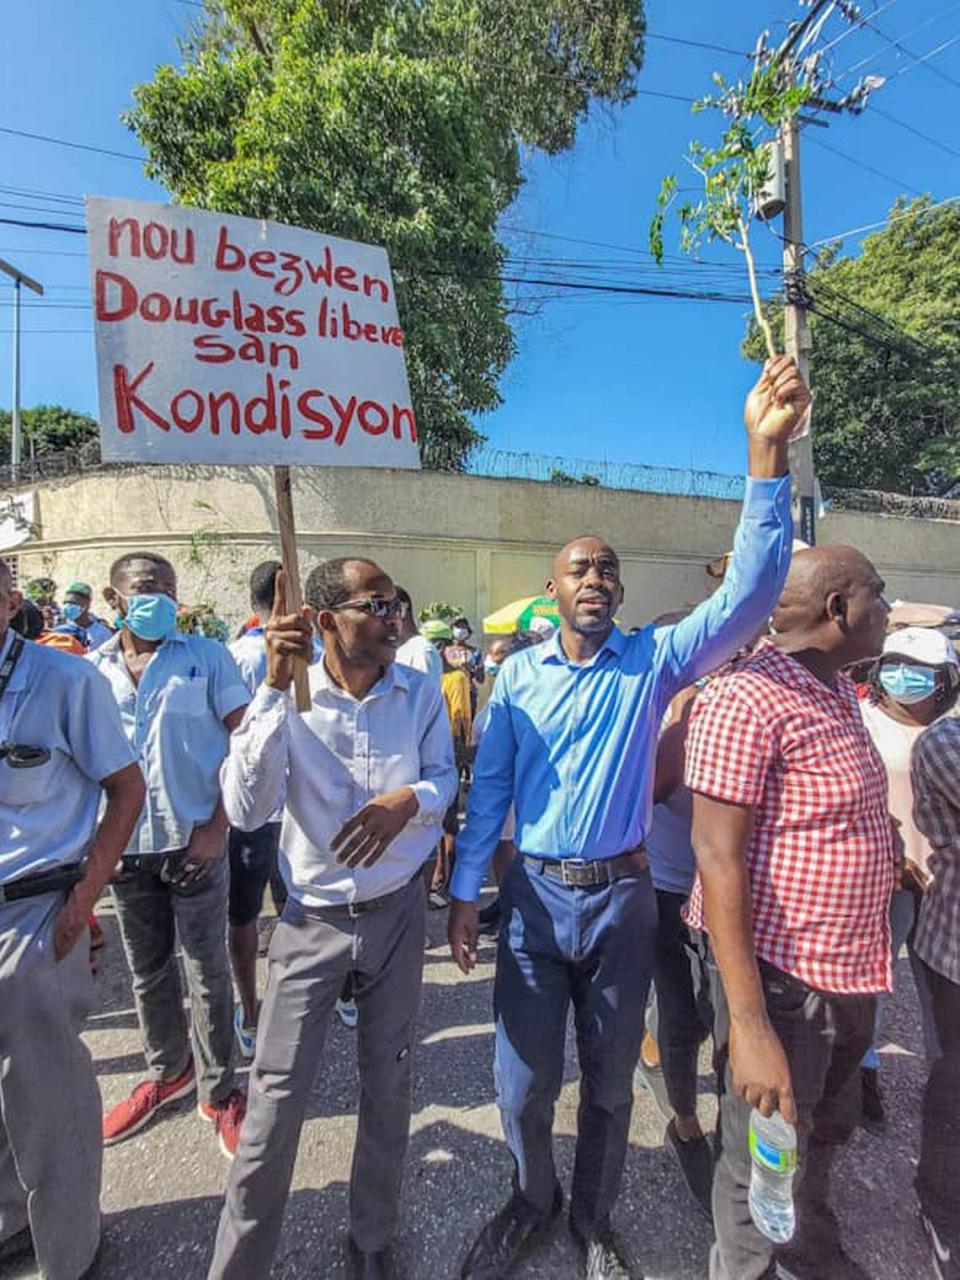 Una multitud frente al centro médico  GHESKIO, en Puerto Príncipe, exige la libertad de Douglas Pape, hijo del Dr. Jean William "Bill" Pape, médico de renombre. El agrónomo de 33 años fue secuestrado el 28 de noviembre cerca de su finca de café, en las colinas de la capital haitiana, y sigue cautivo.